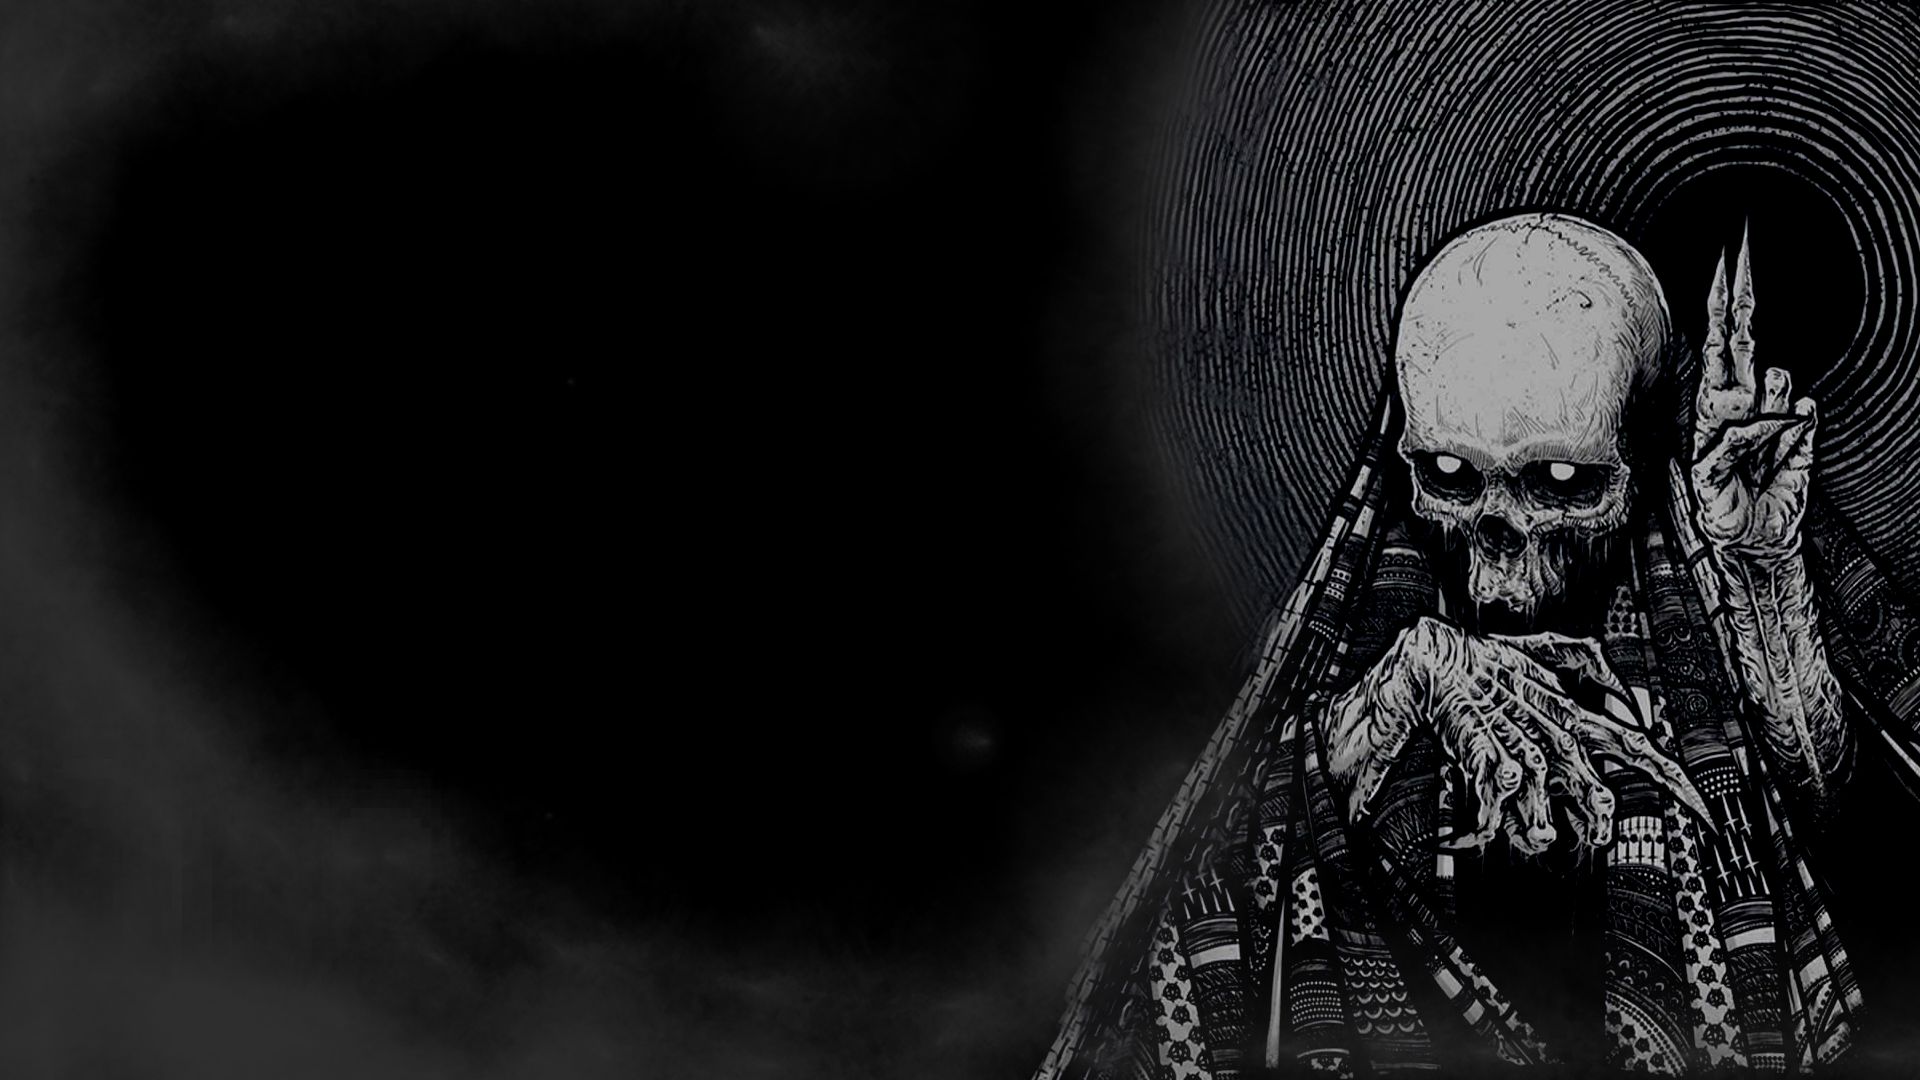 Dark horror skeleton skull occult evil wallpaper 1920x1080 28014